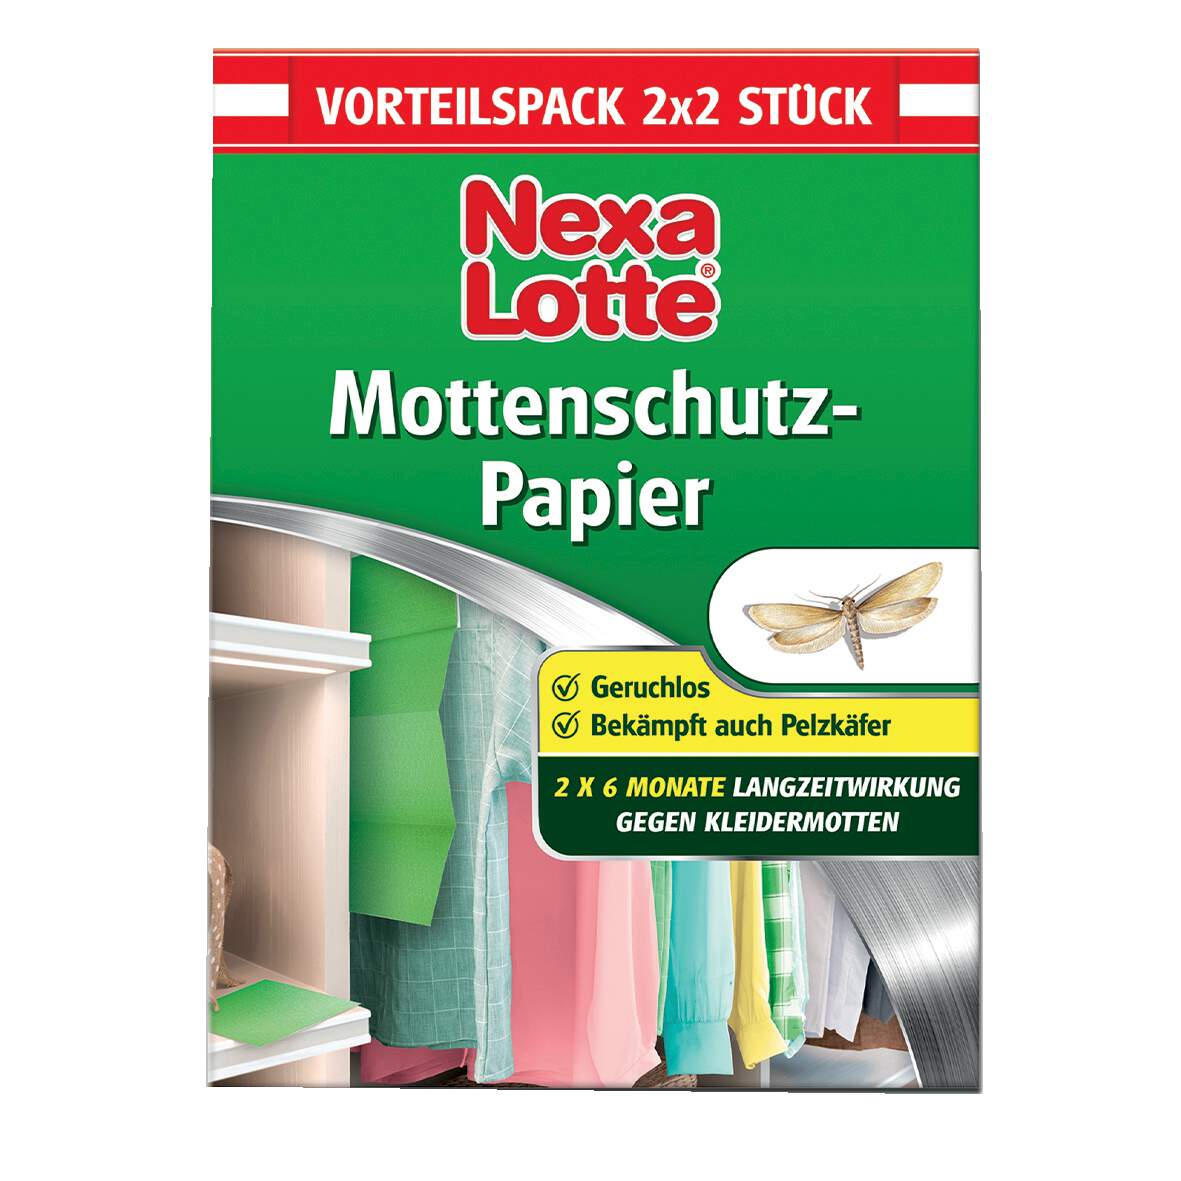 1225326 - Mottenschutz-Papier 4 Stk./Pkg.